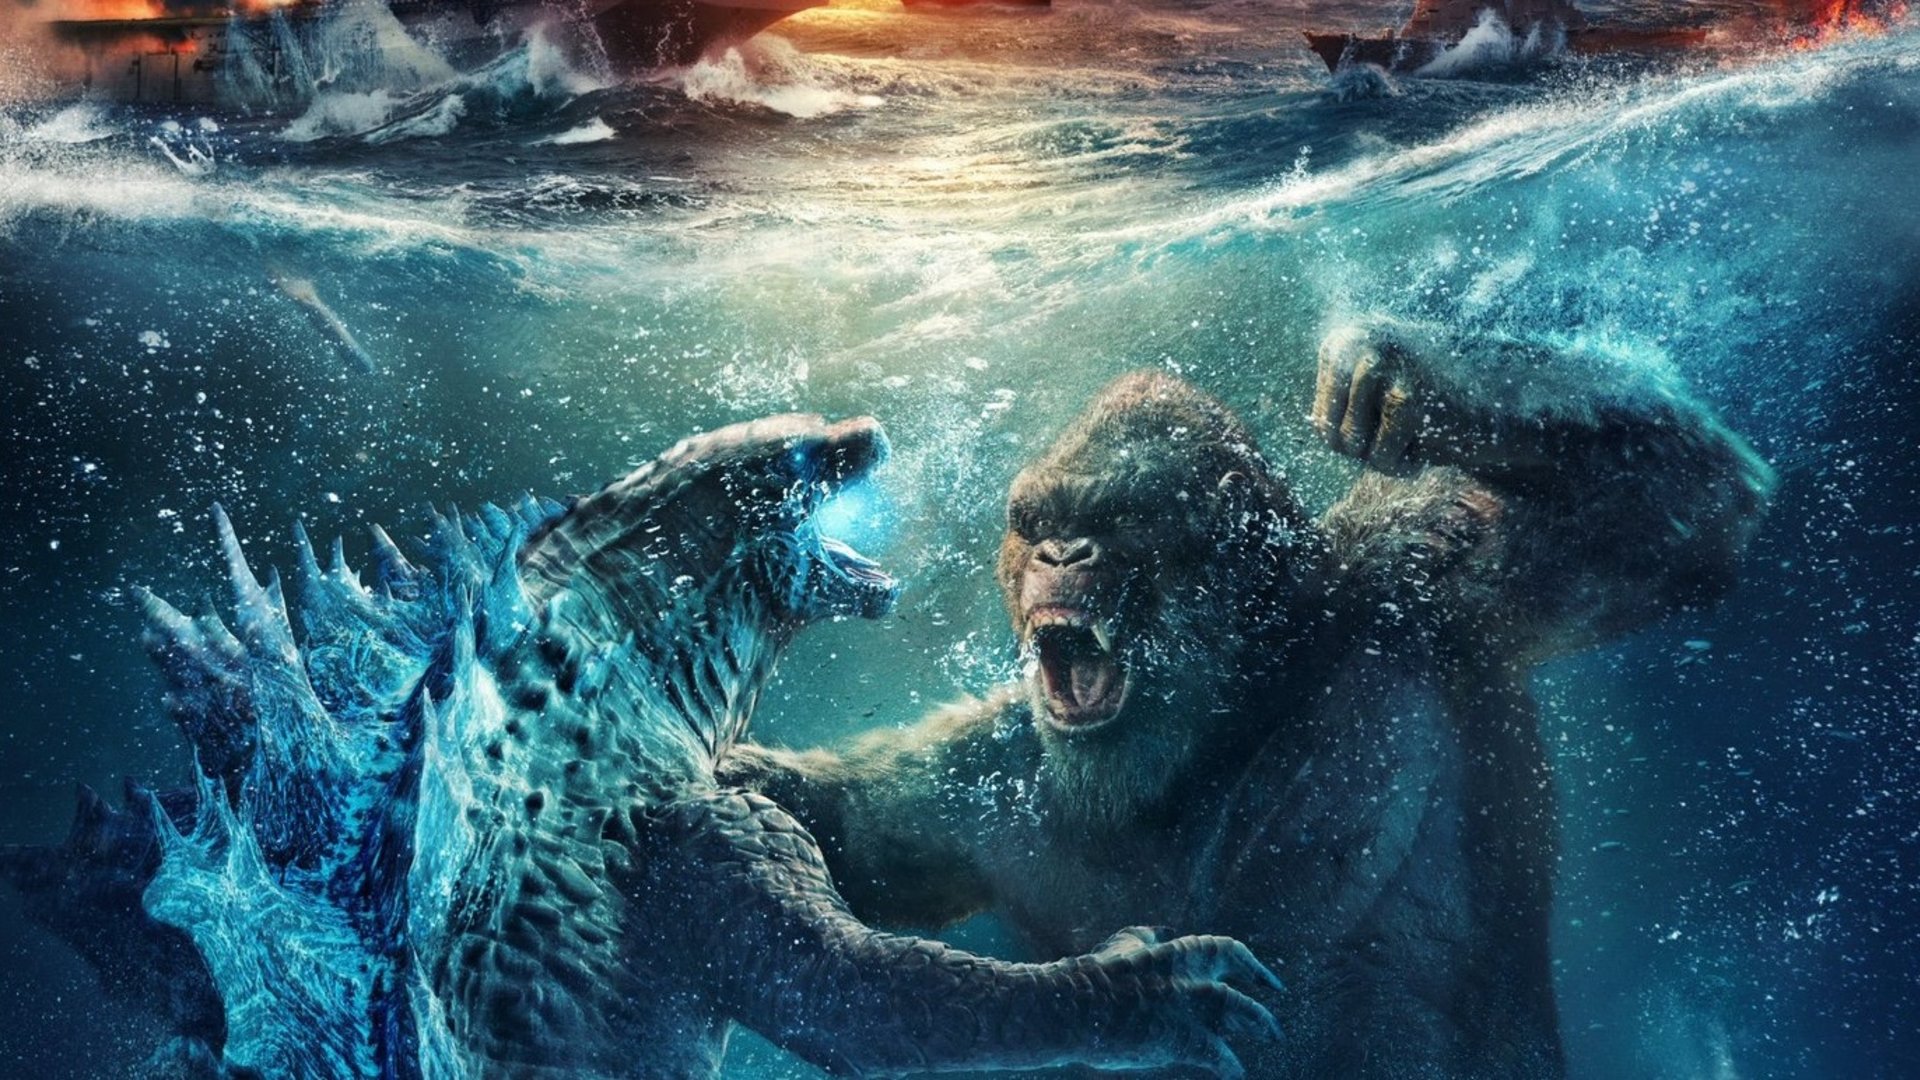 #„Godzilla vs. Kong 2“: Titel der Monster-Fortsetzung deutet auf das geilste Tag-Team aller Zeiten